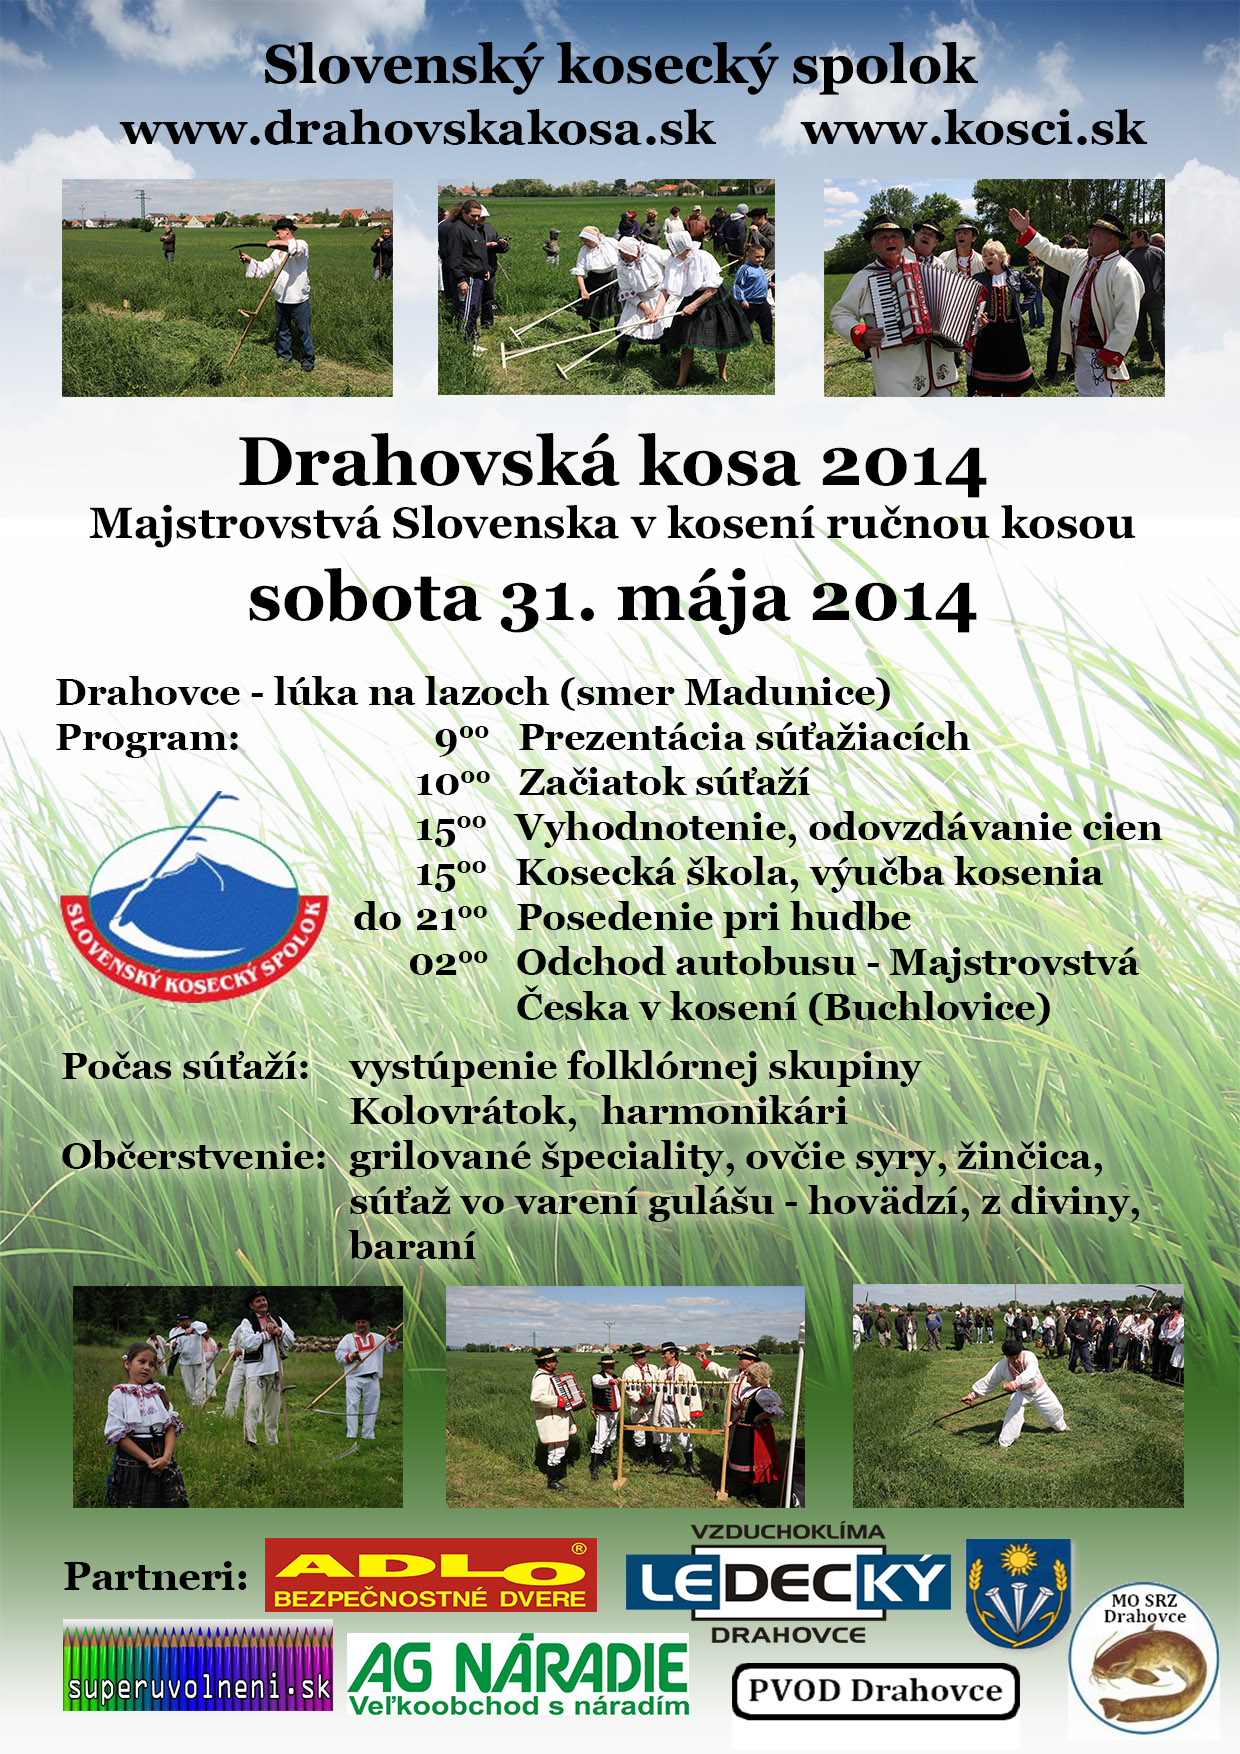 Drahovská kosa 2014 Drahovce - 3. ročník